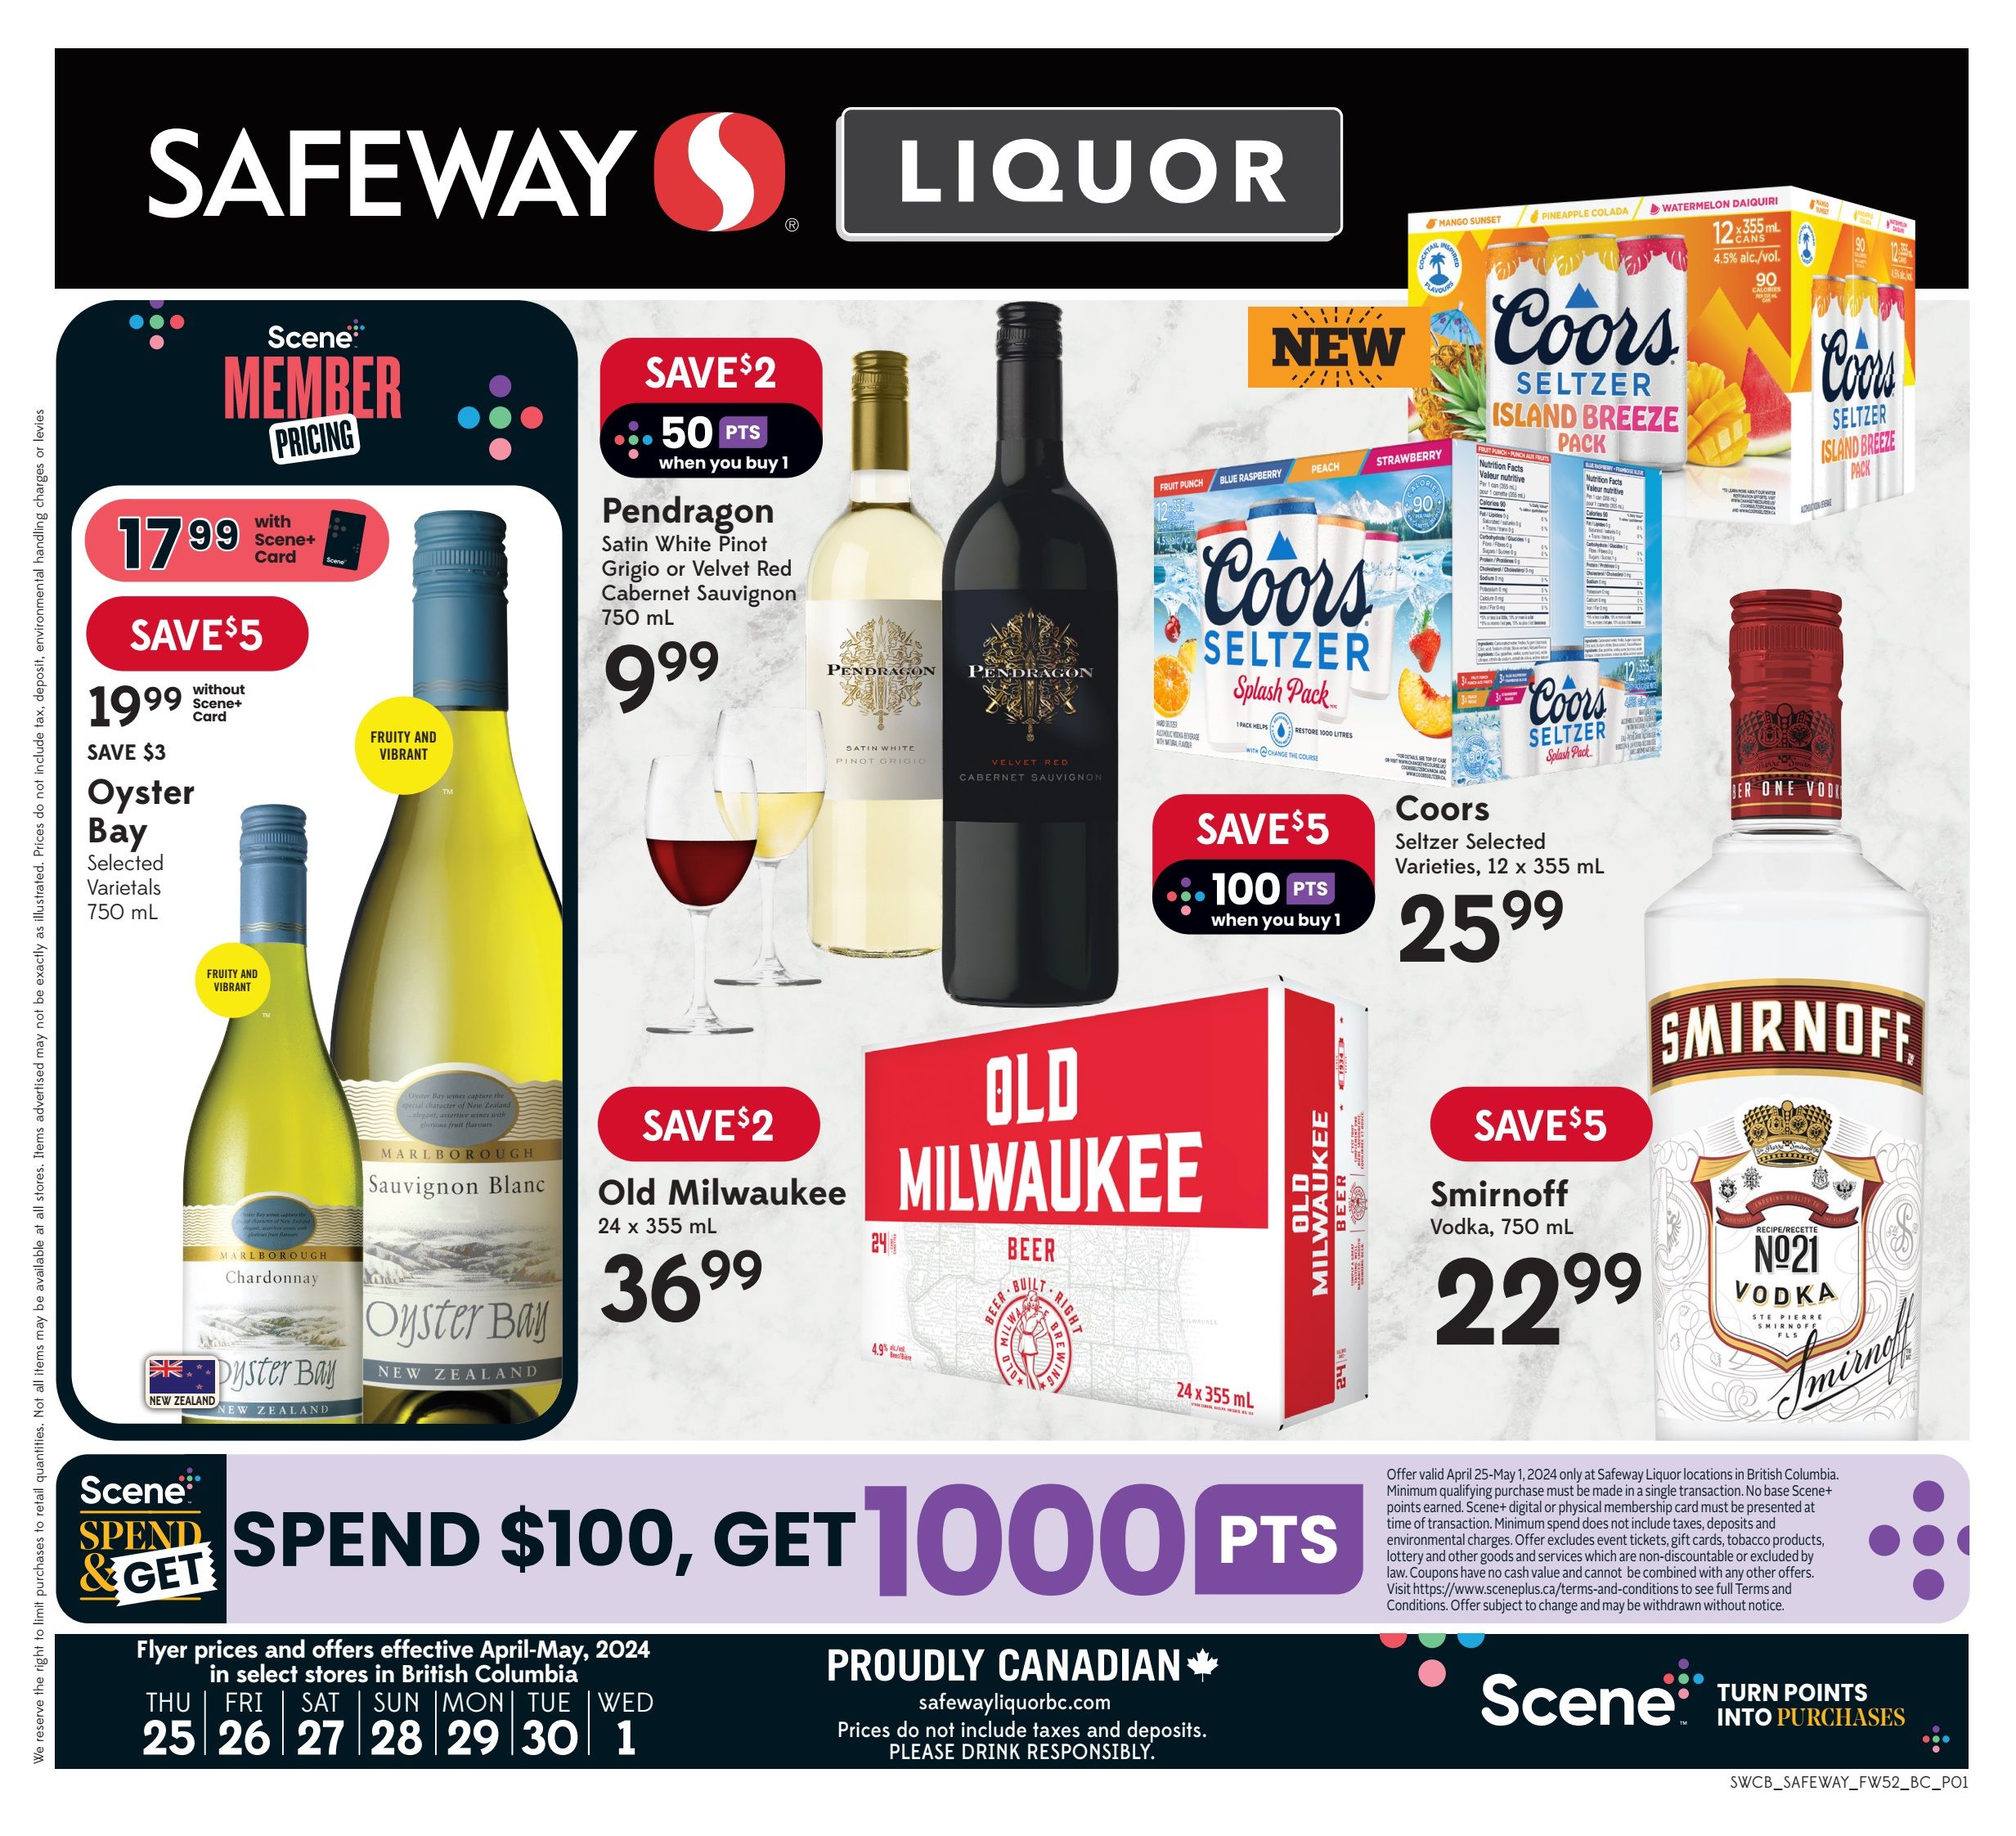 Safeway - Liquor Specials